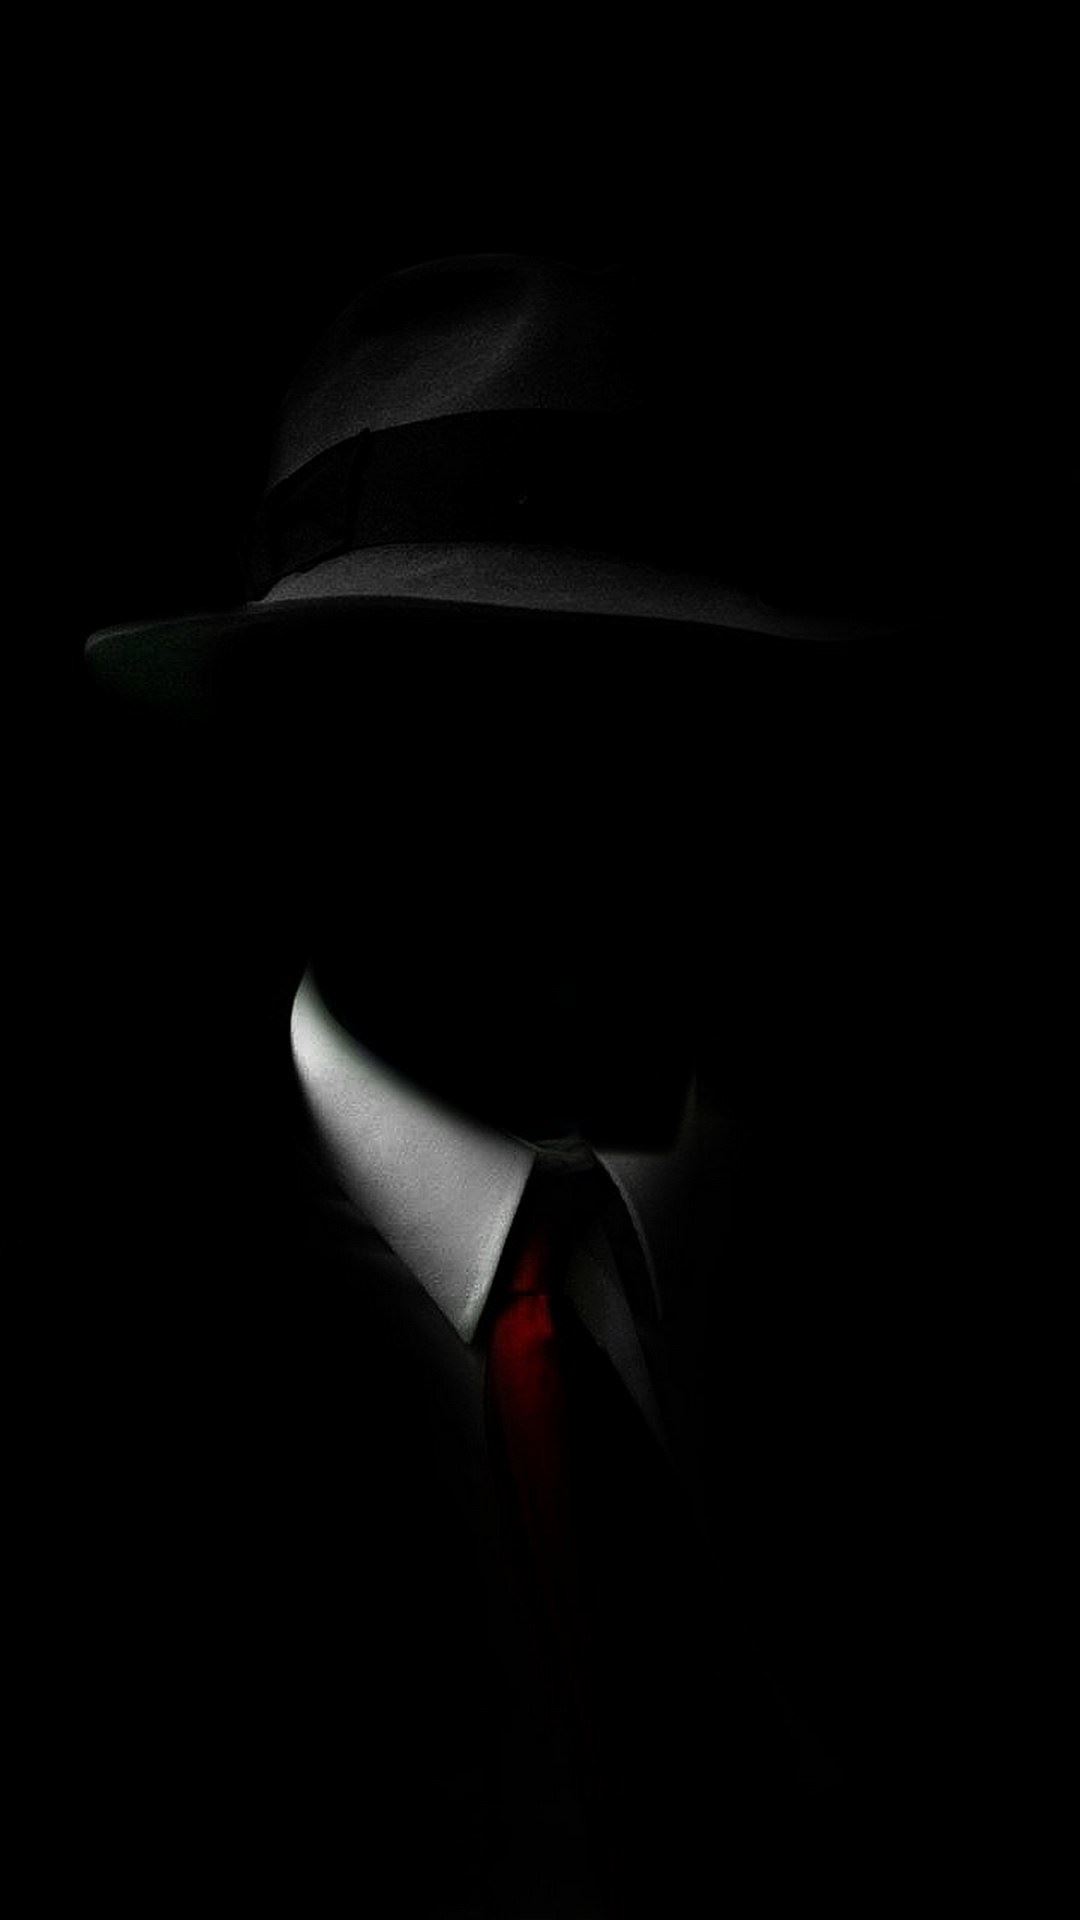 Black Suit Hat Red Tie iPhone Wallpaper